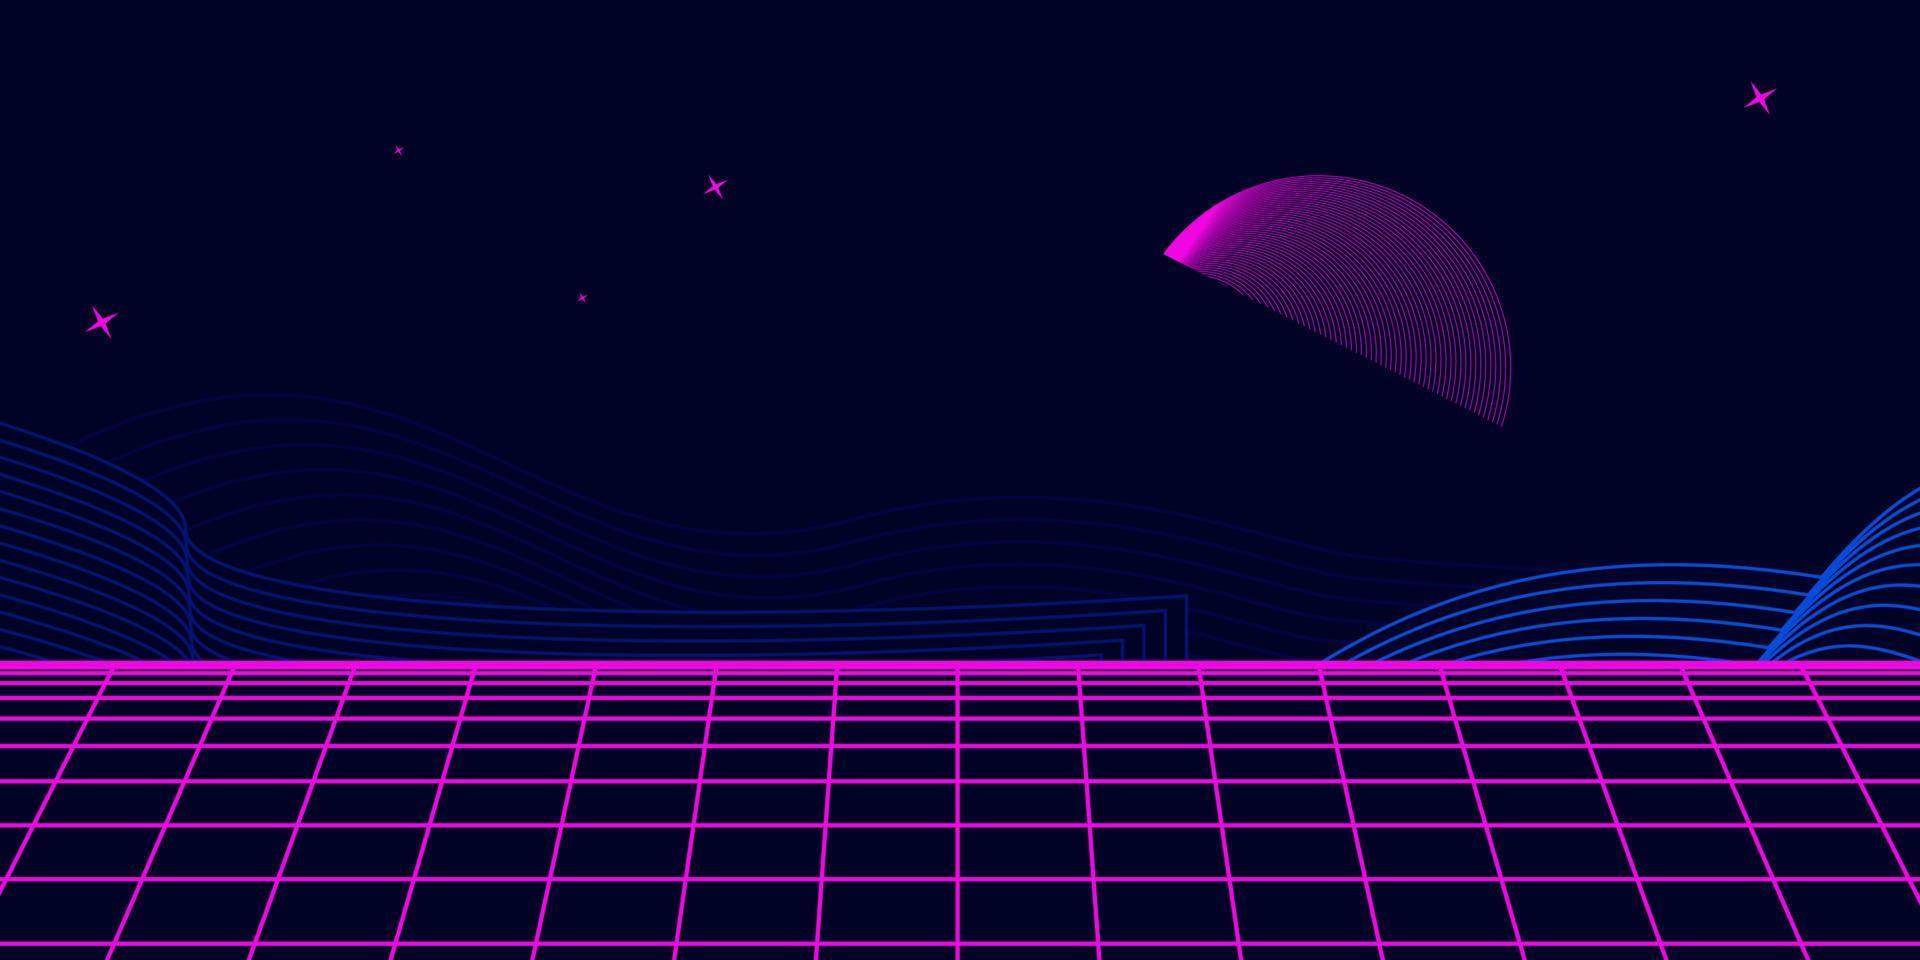 Retro-Hintergrund futuristische Landschaft im Stil der 1980er Jahre. digitale Retro-Landschaft Cyber-Oberfläche. Party-Hintergrund der 80er Jahre. Retro-80er-Mode-Sci-Fi-Hintergrund. digitale Cyber-Oberfläche. vektor